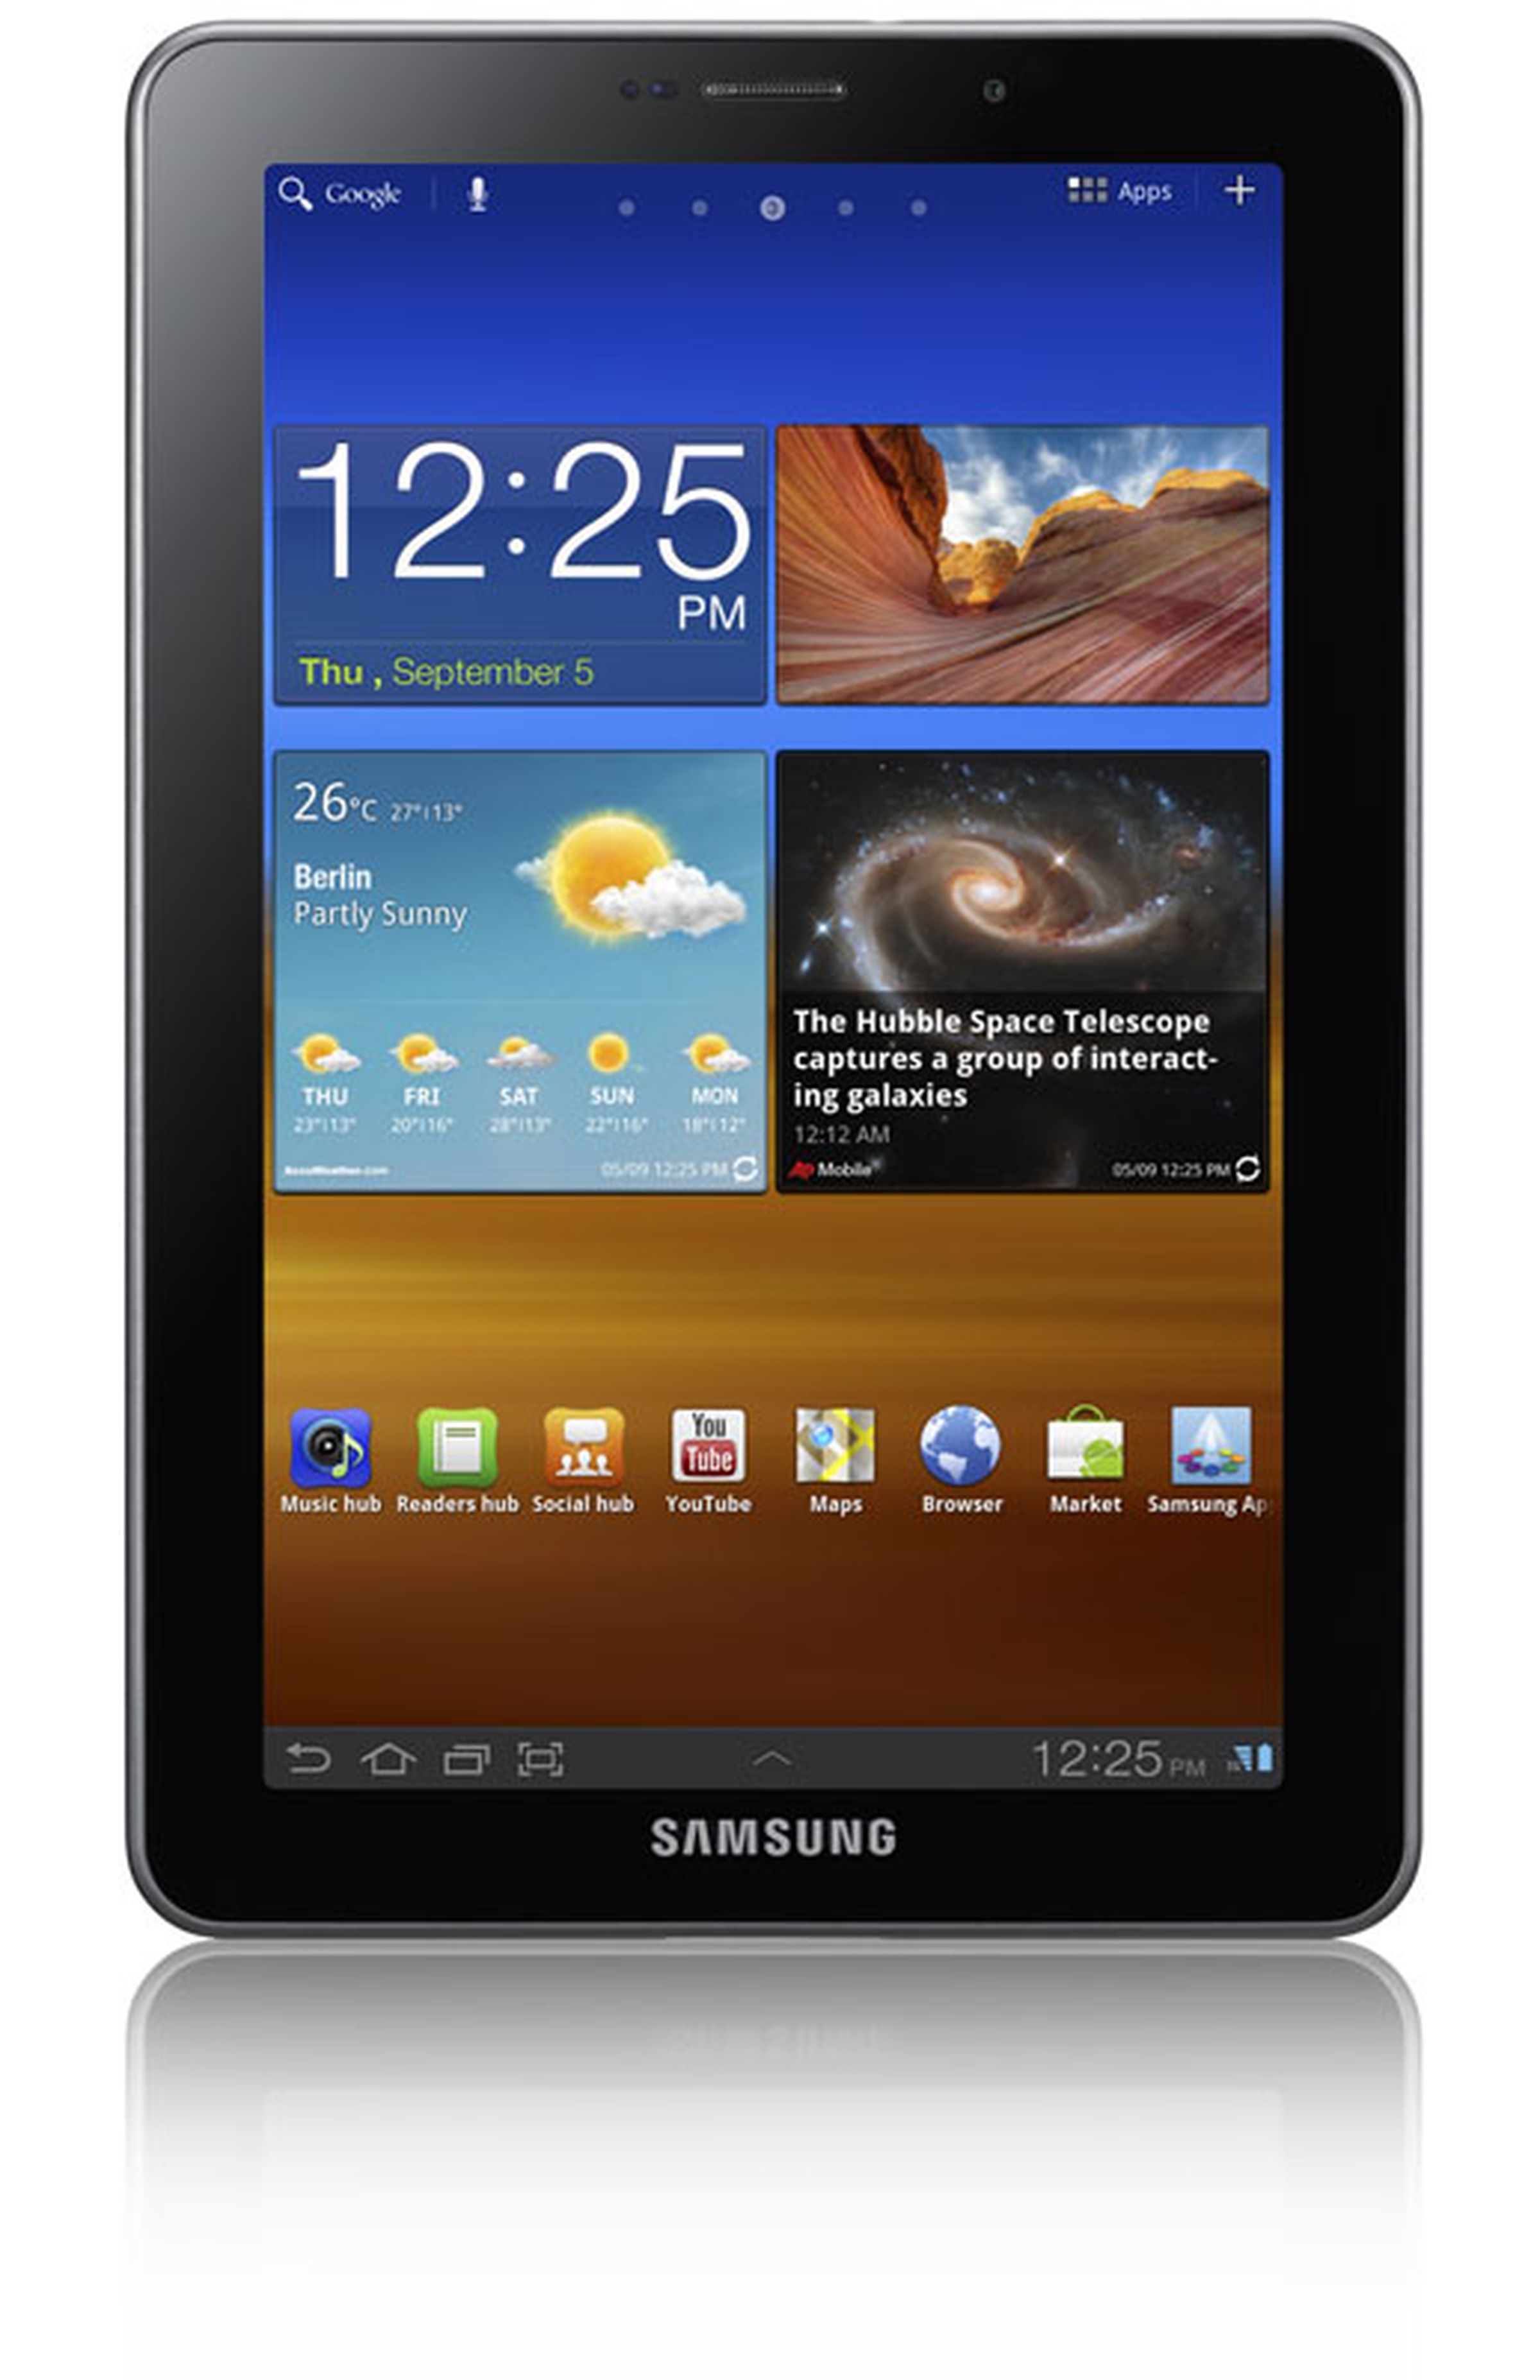 Samsung Galaxy Tab 7.7 press photos